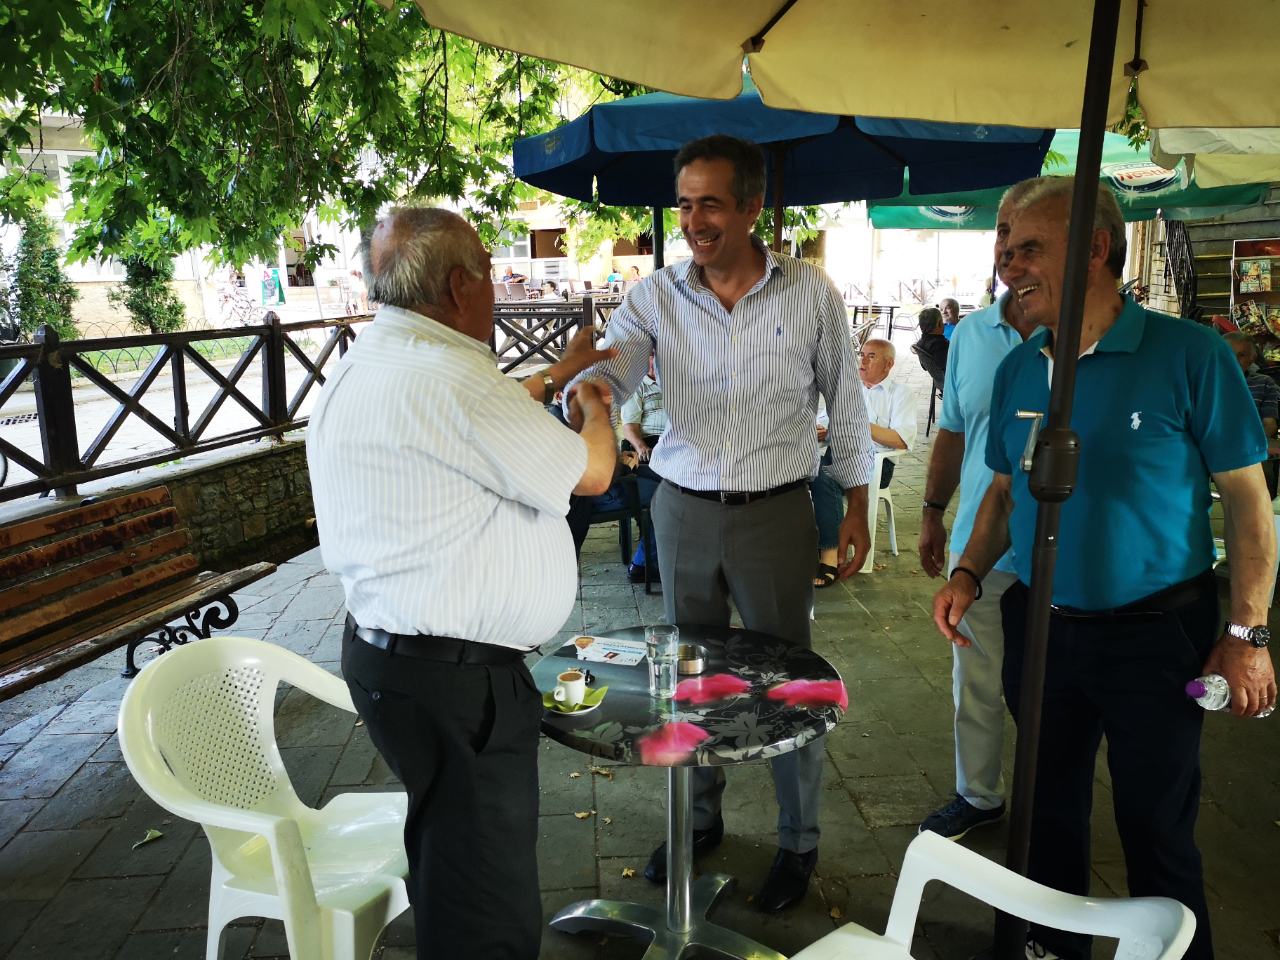 Επισκέψεις πραγματοποίησε ο Στάθης Κωνσταντινίδης σε Υπηρεσίες, τοπικά ΜΜΕ και χωριά της Κοζάνης την Τρίτη 25 Ιουνίου